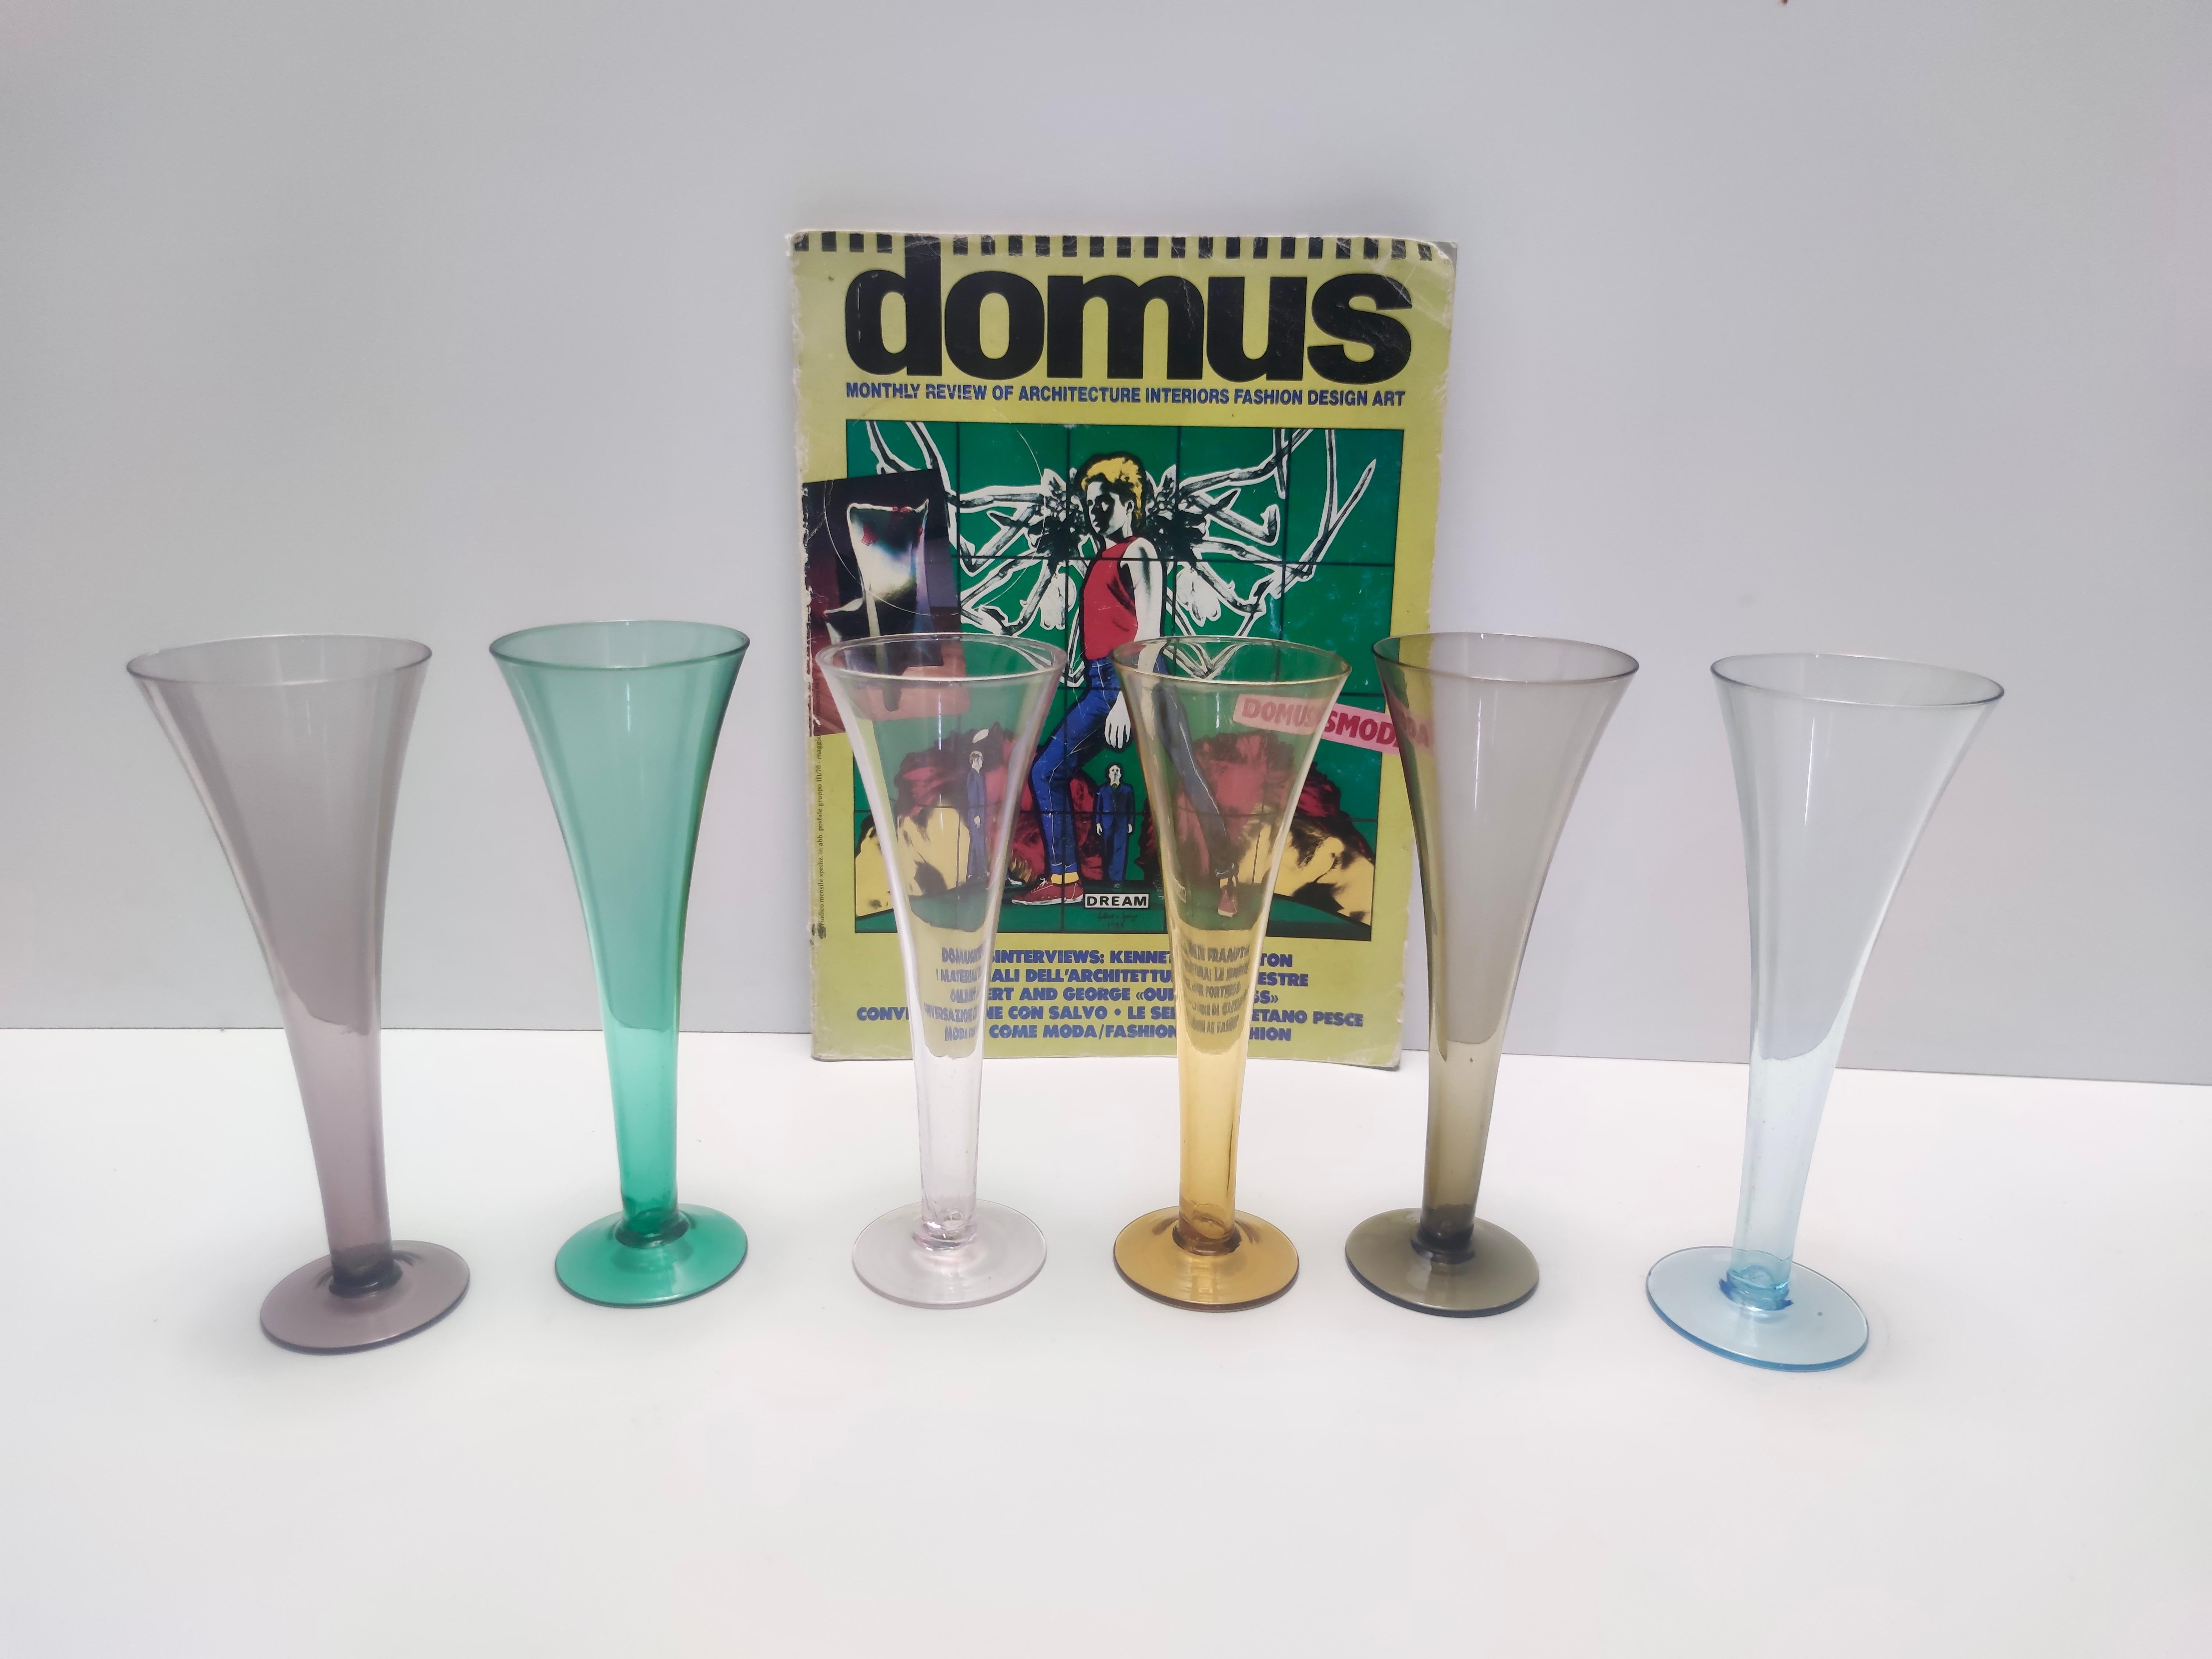 Hergestellt in Italien, 1980er Jahre.
Diese Flöten werden aus sehr dünnem Murano-Glas hergestellt.
Sie können auch als Blumenvasen verwendet werden.
Da es sich um Vintage-Produkte handelt, können sie leichte Gebrauchsspuren aufweisen, aber sie sind